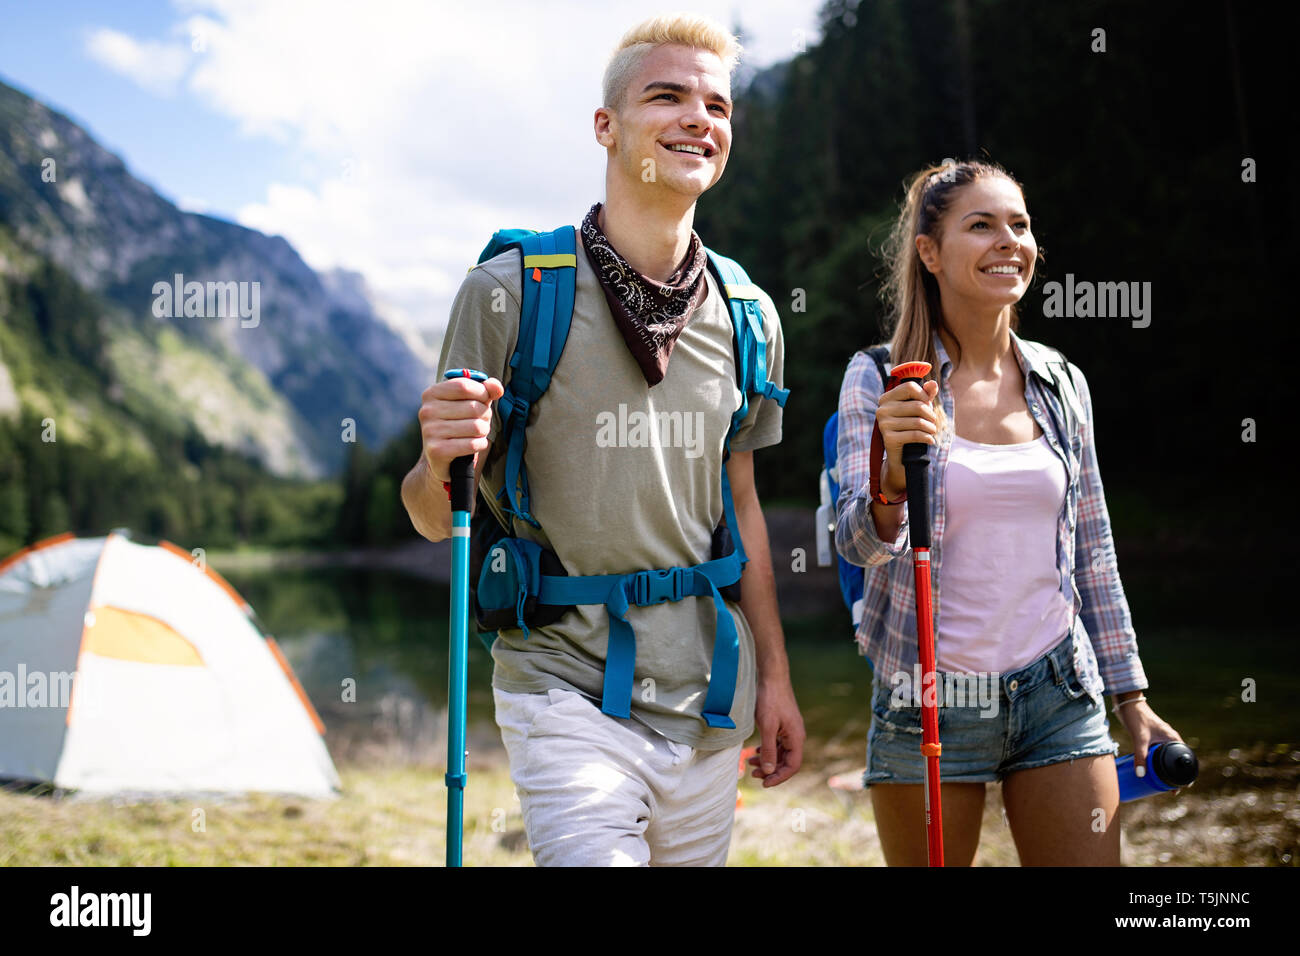 Lächelnd Freunde gehen mit Rucksäcken. Abenteuer, Reisen, Tourismus, Wandern und Menschen Konzept. Stockfoto